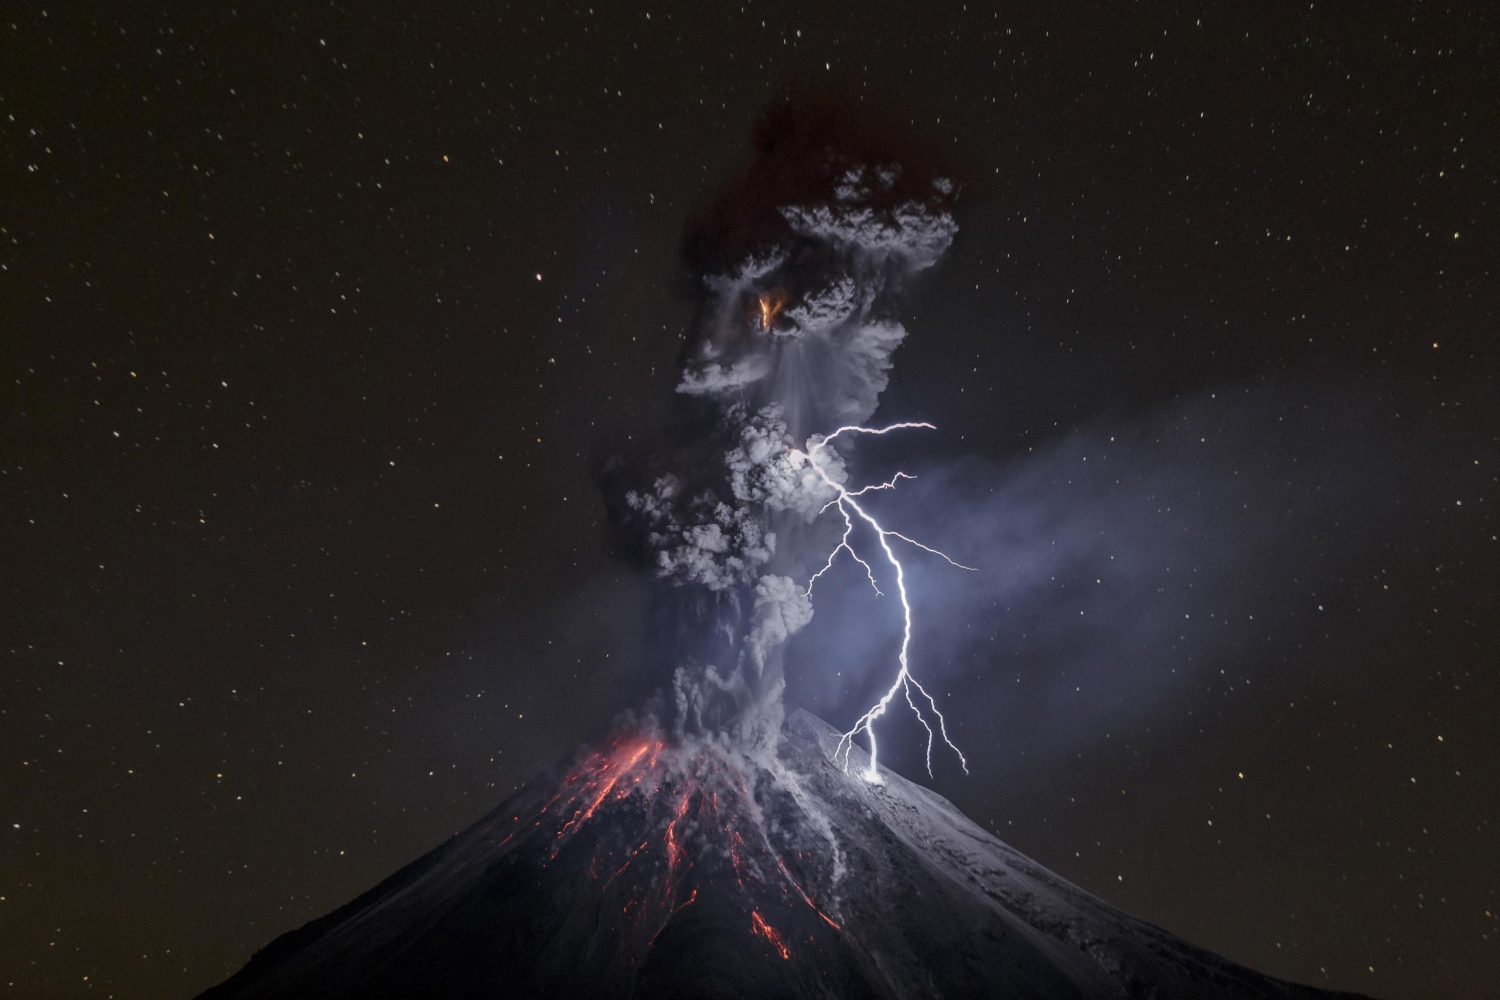 El imponente volcán Colima, tercer premio ‘Naturaleza’ del World Press Photo